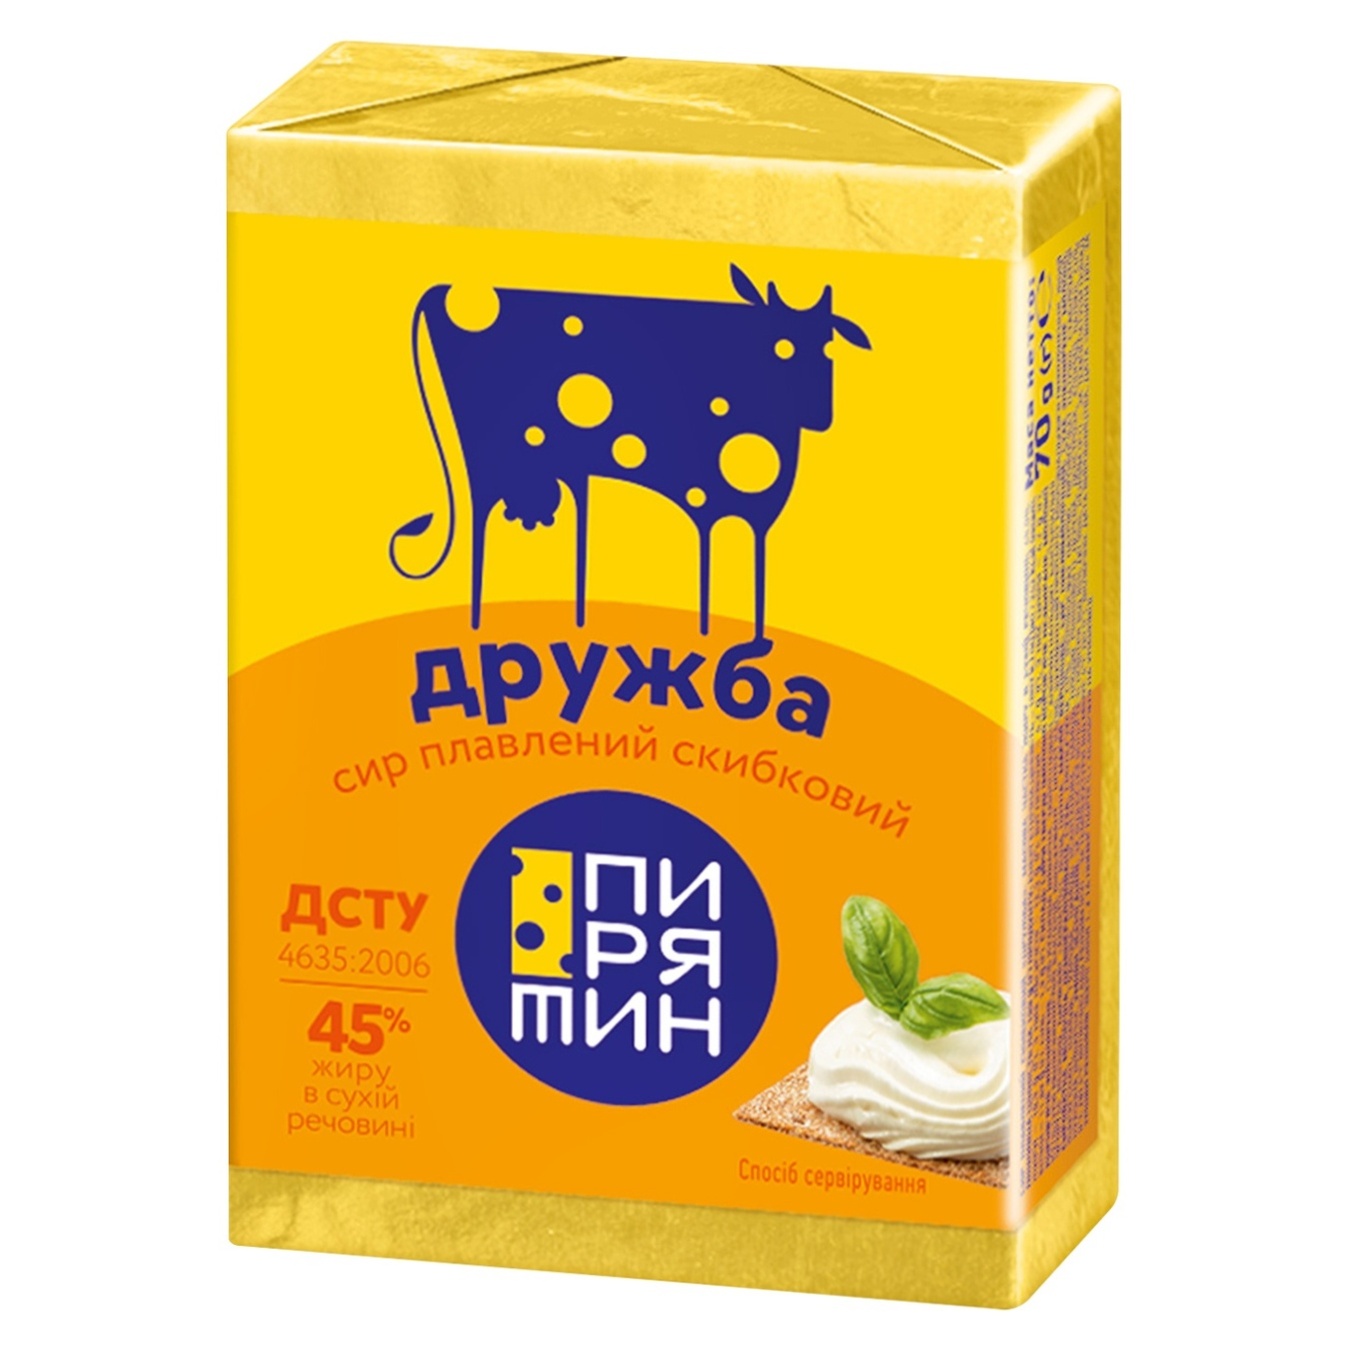 Pyriatyn Druzhba Processed Cheese 55% 70g